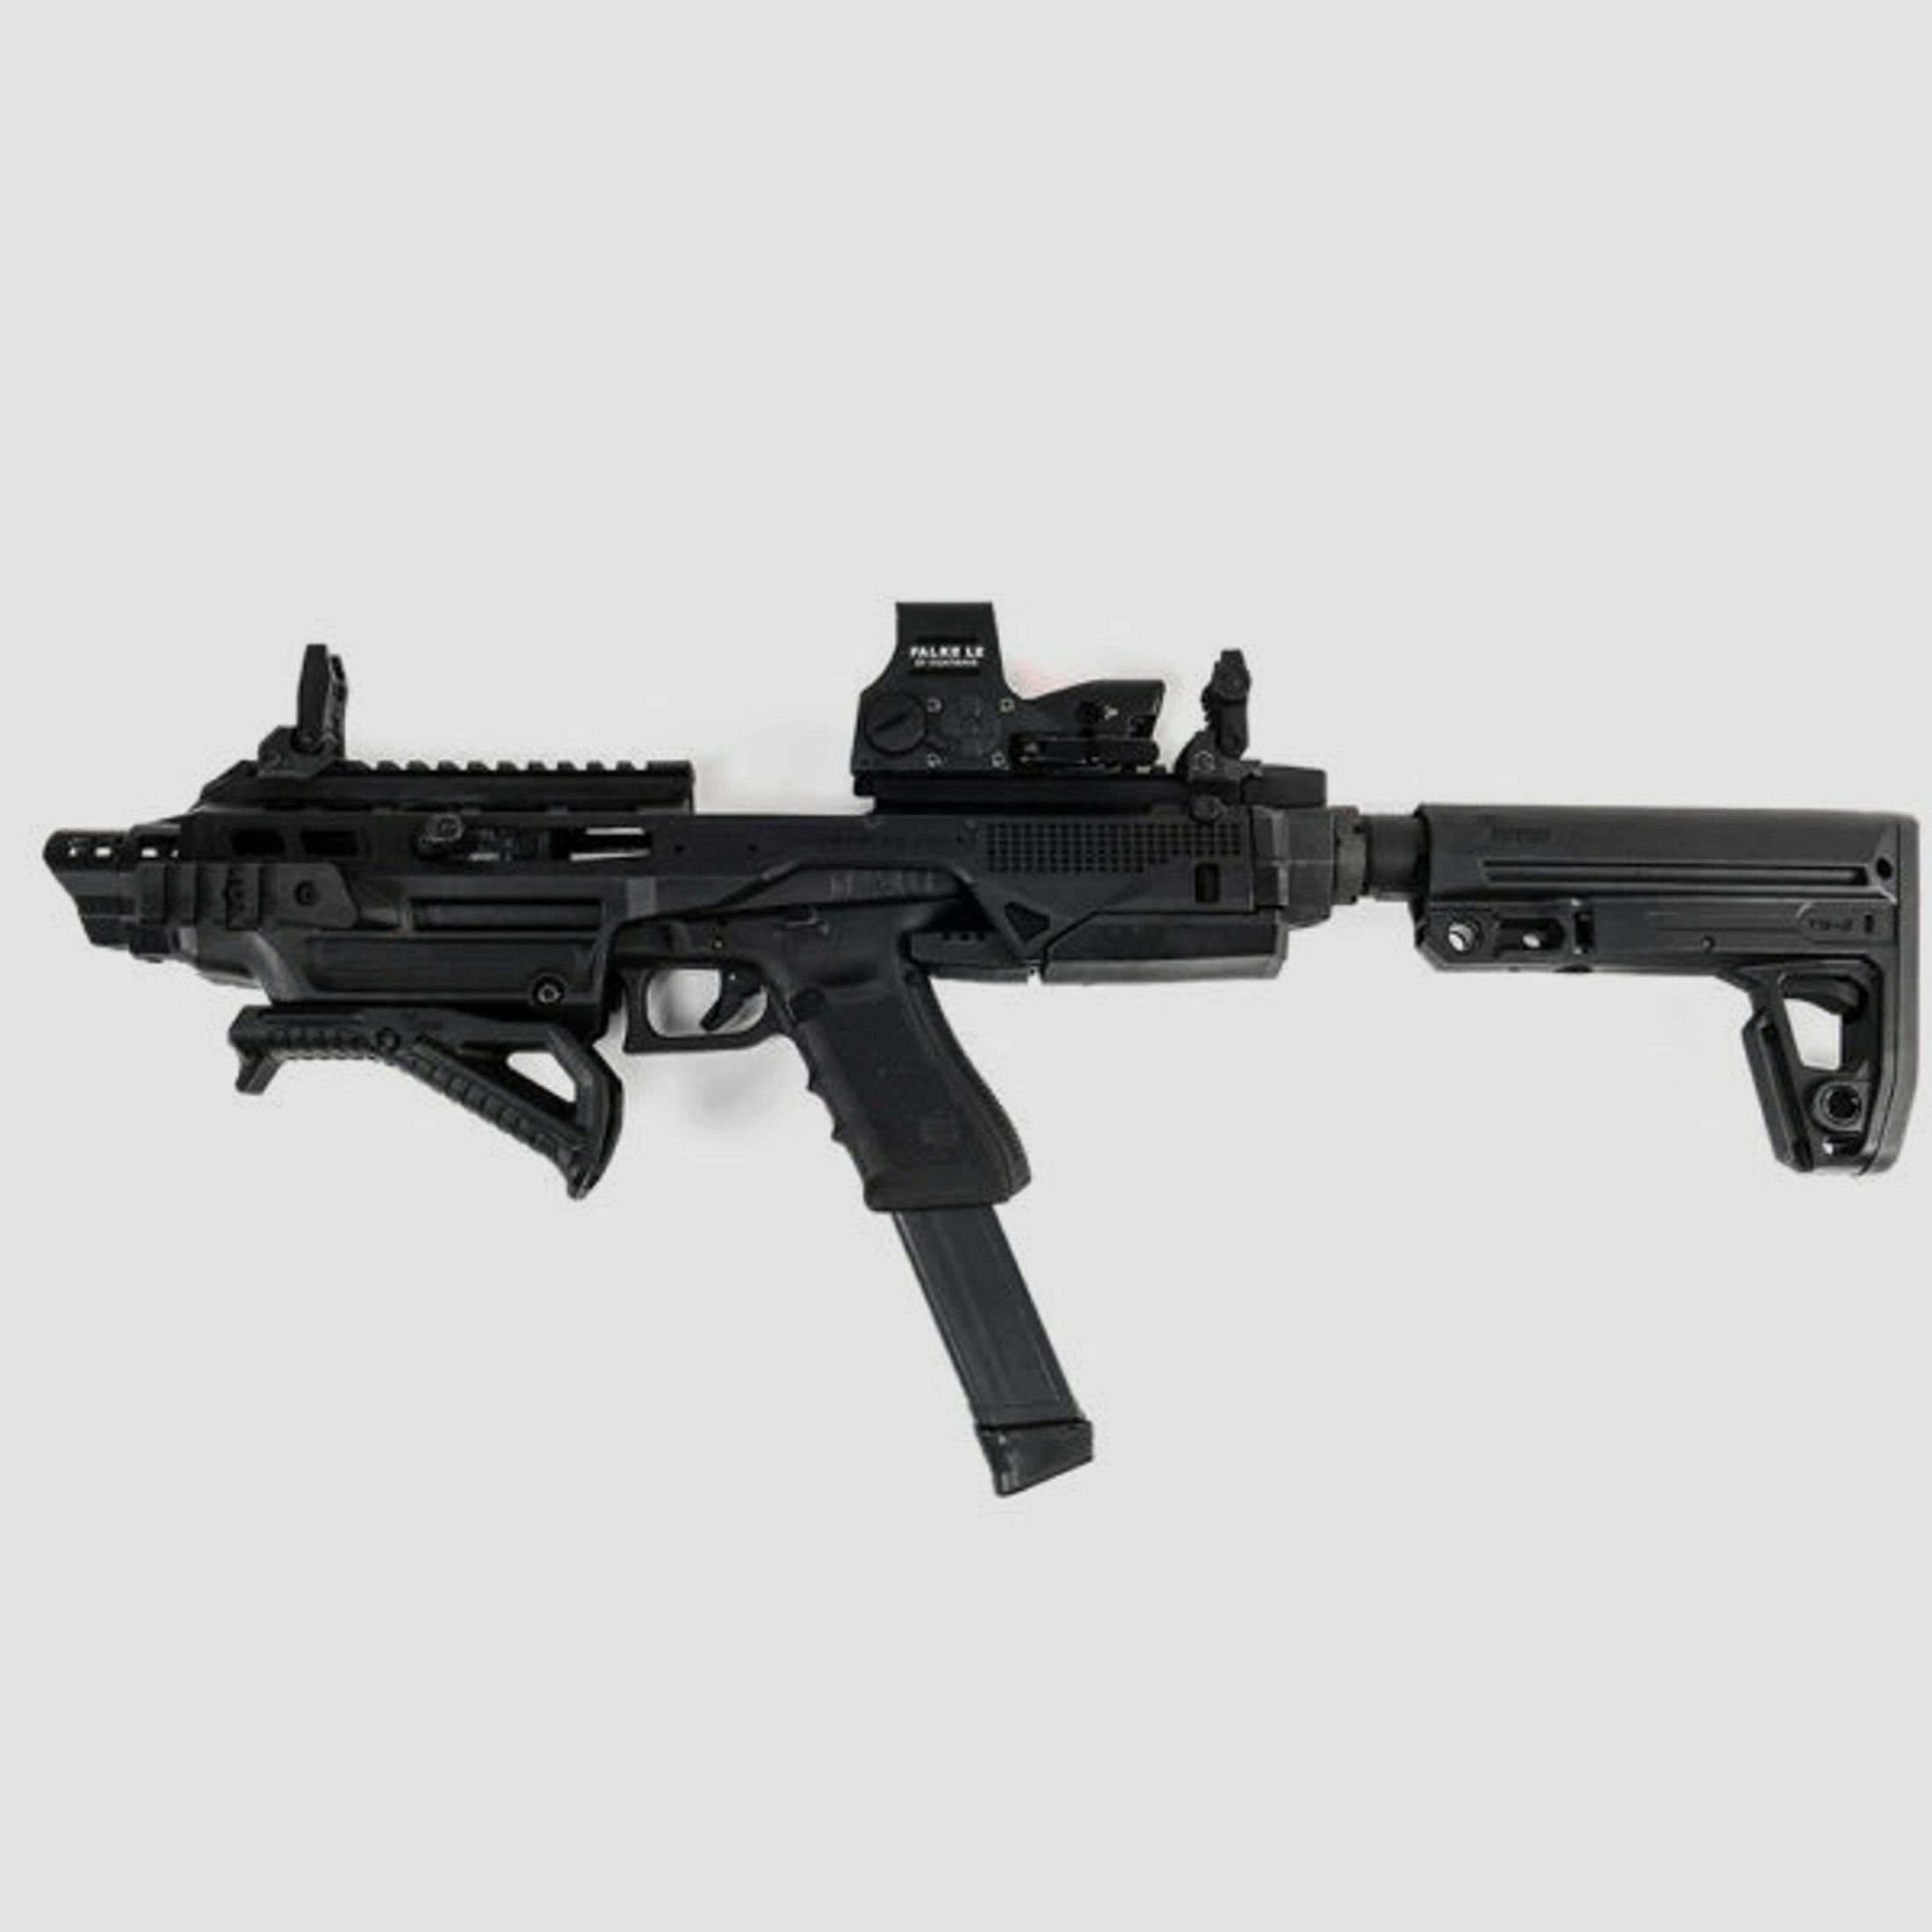 IMI Defense	 Kidon - Pistol Conversion Kit für Glock